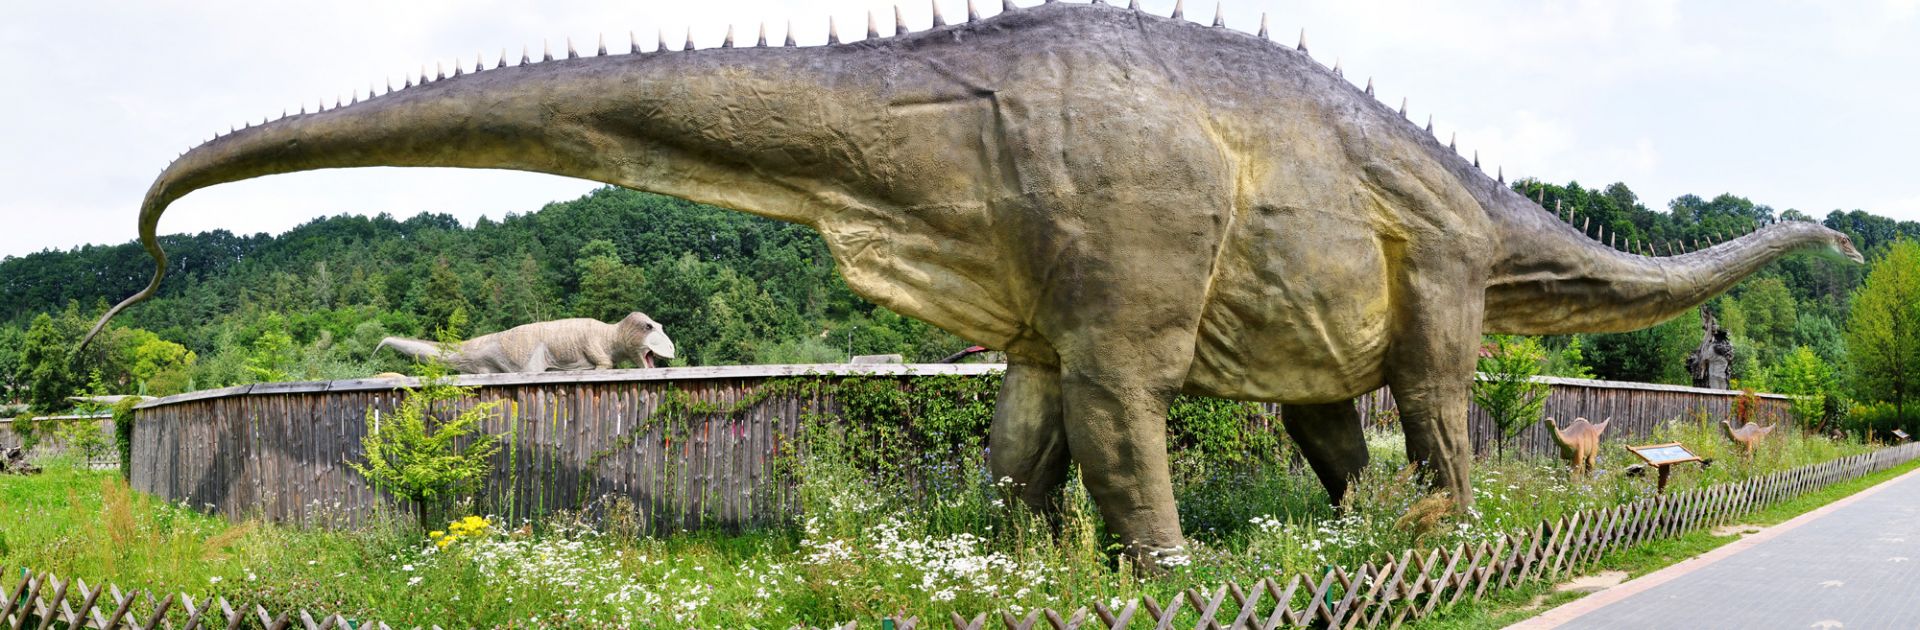 Bałtowski Kompleks Turystyczny - Park Dinozaurów JuraPark